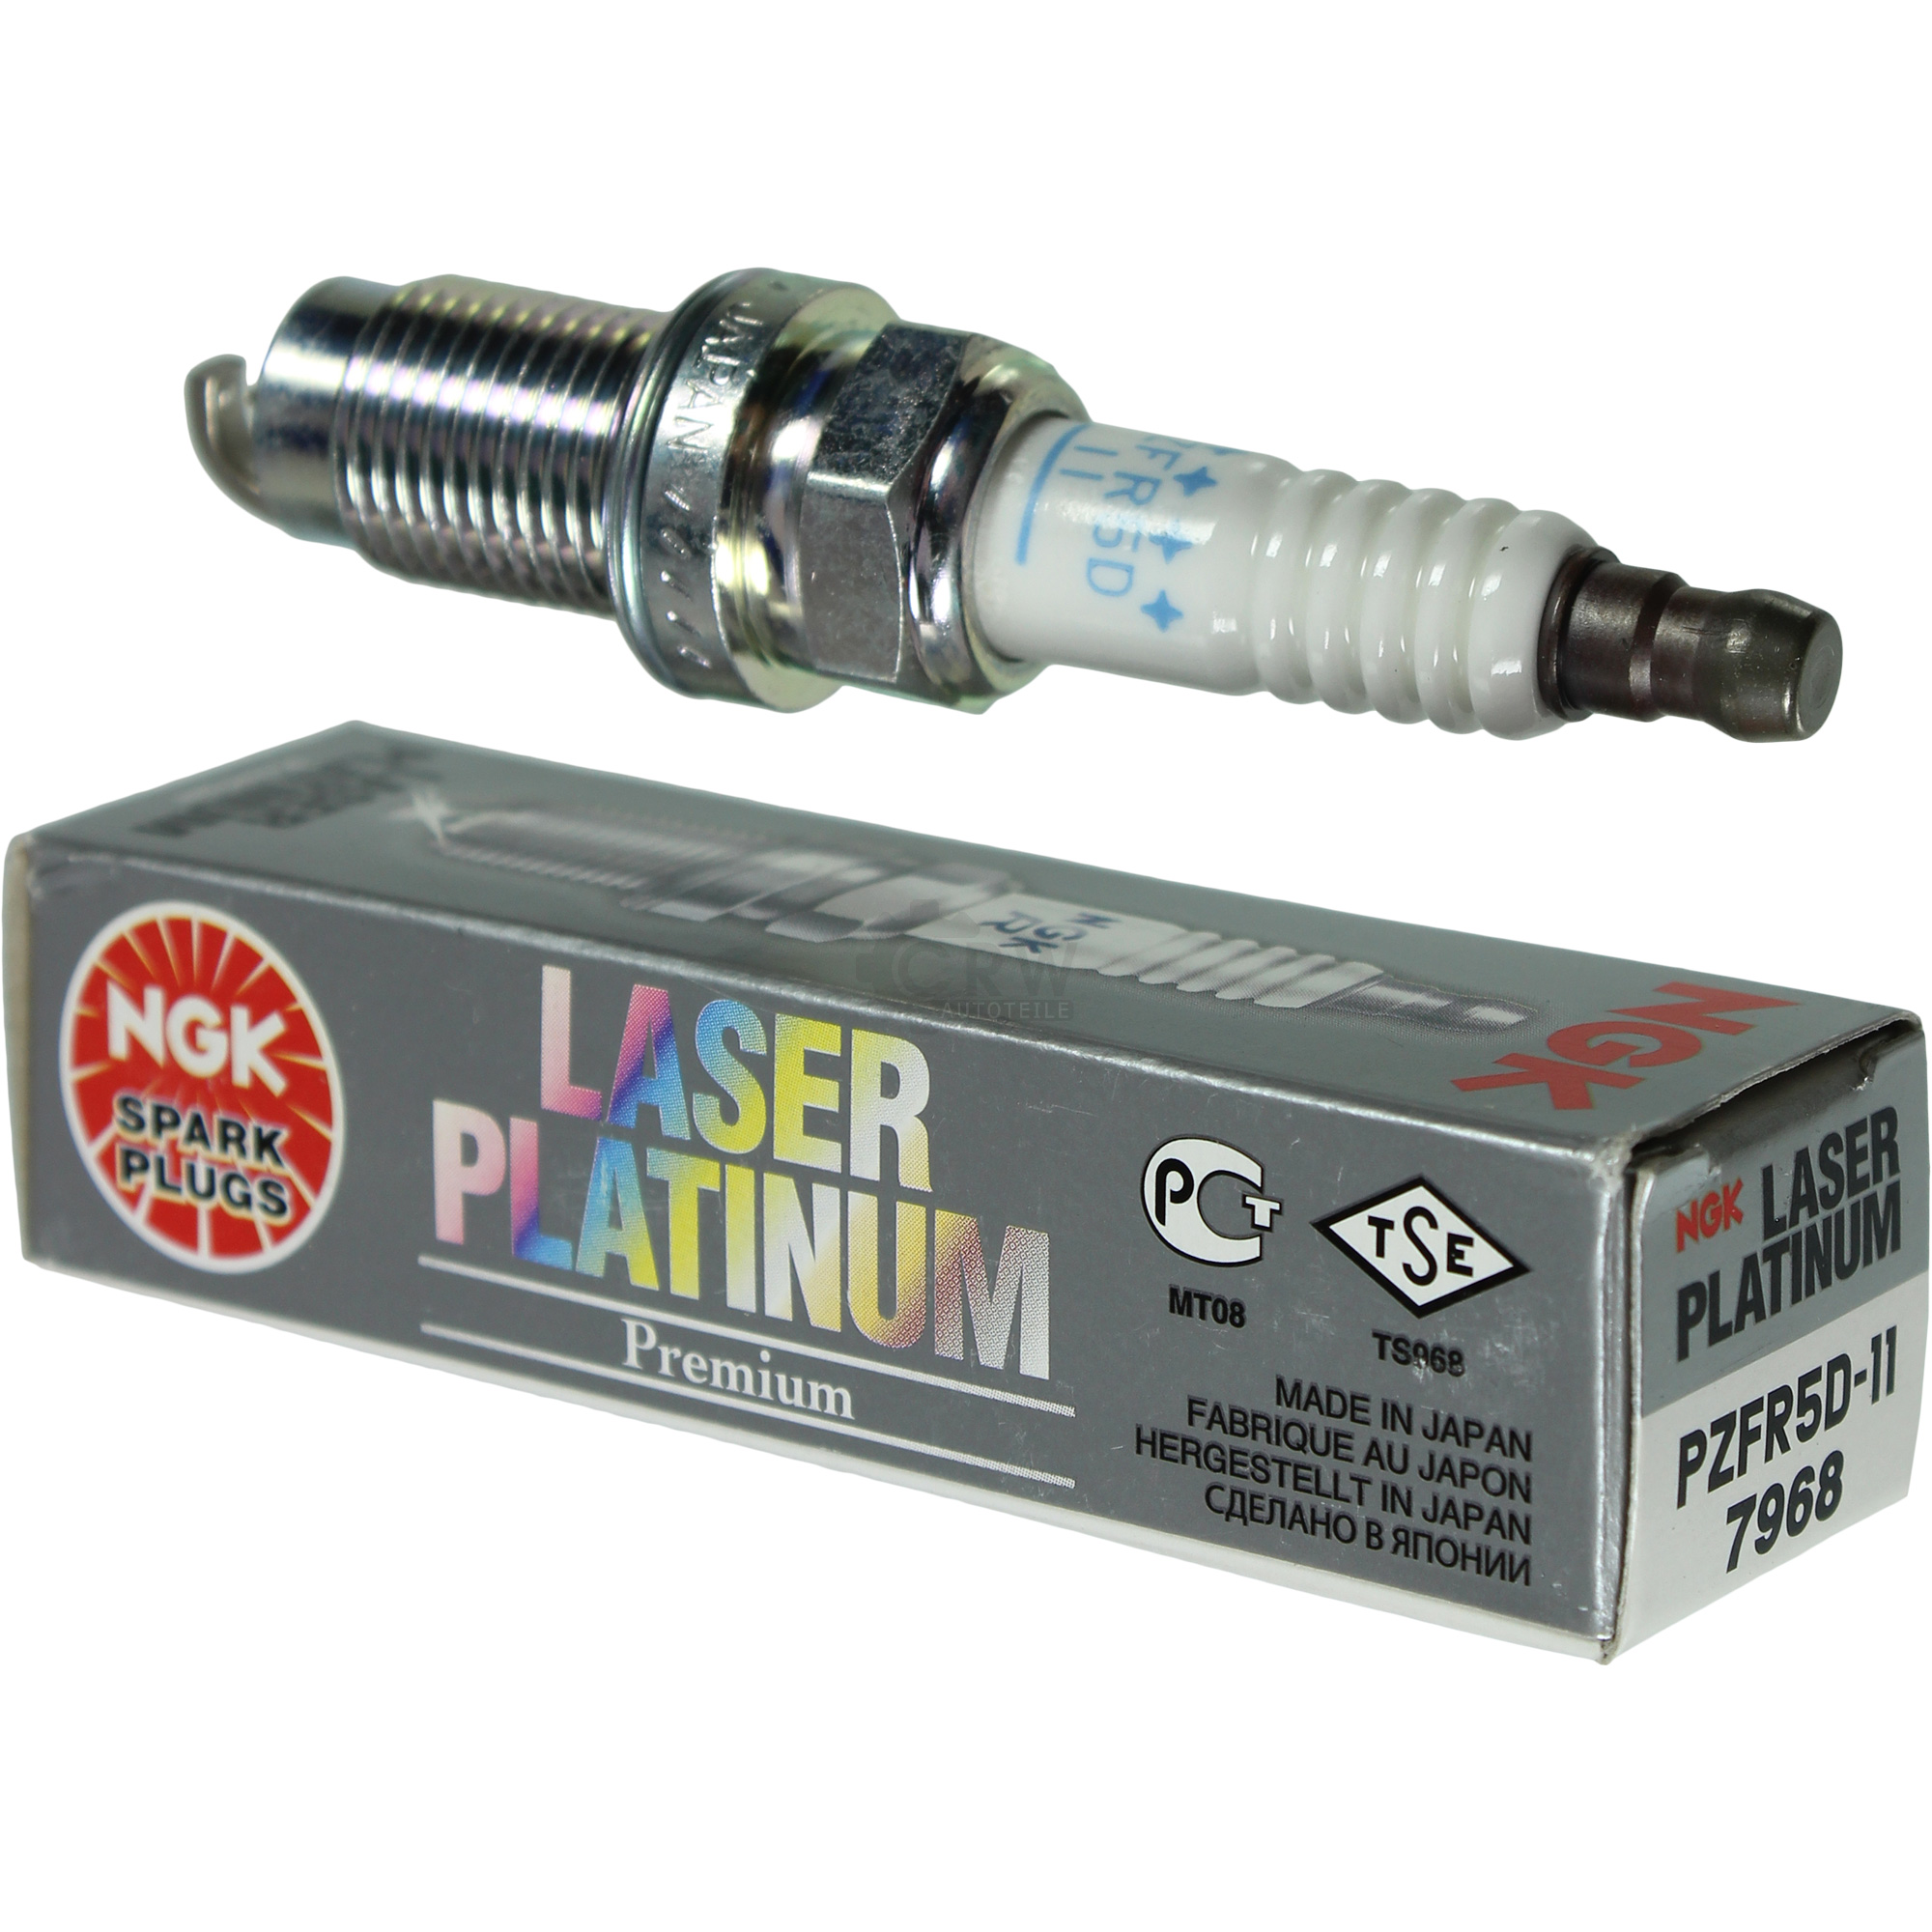 NGK Laser Platinum Premium Zündkerze 7968 Typ PZFR5D-11 Zünd Kerze